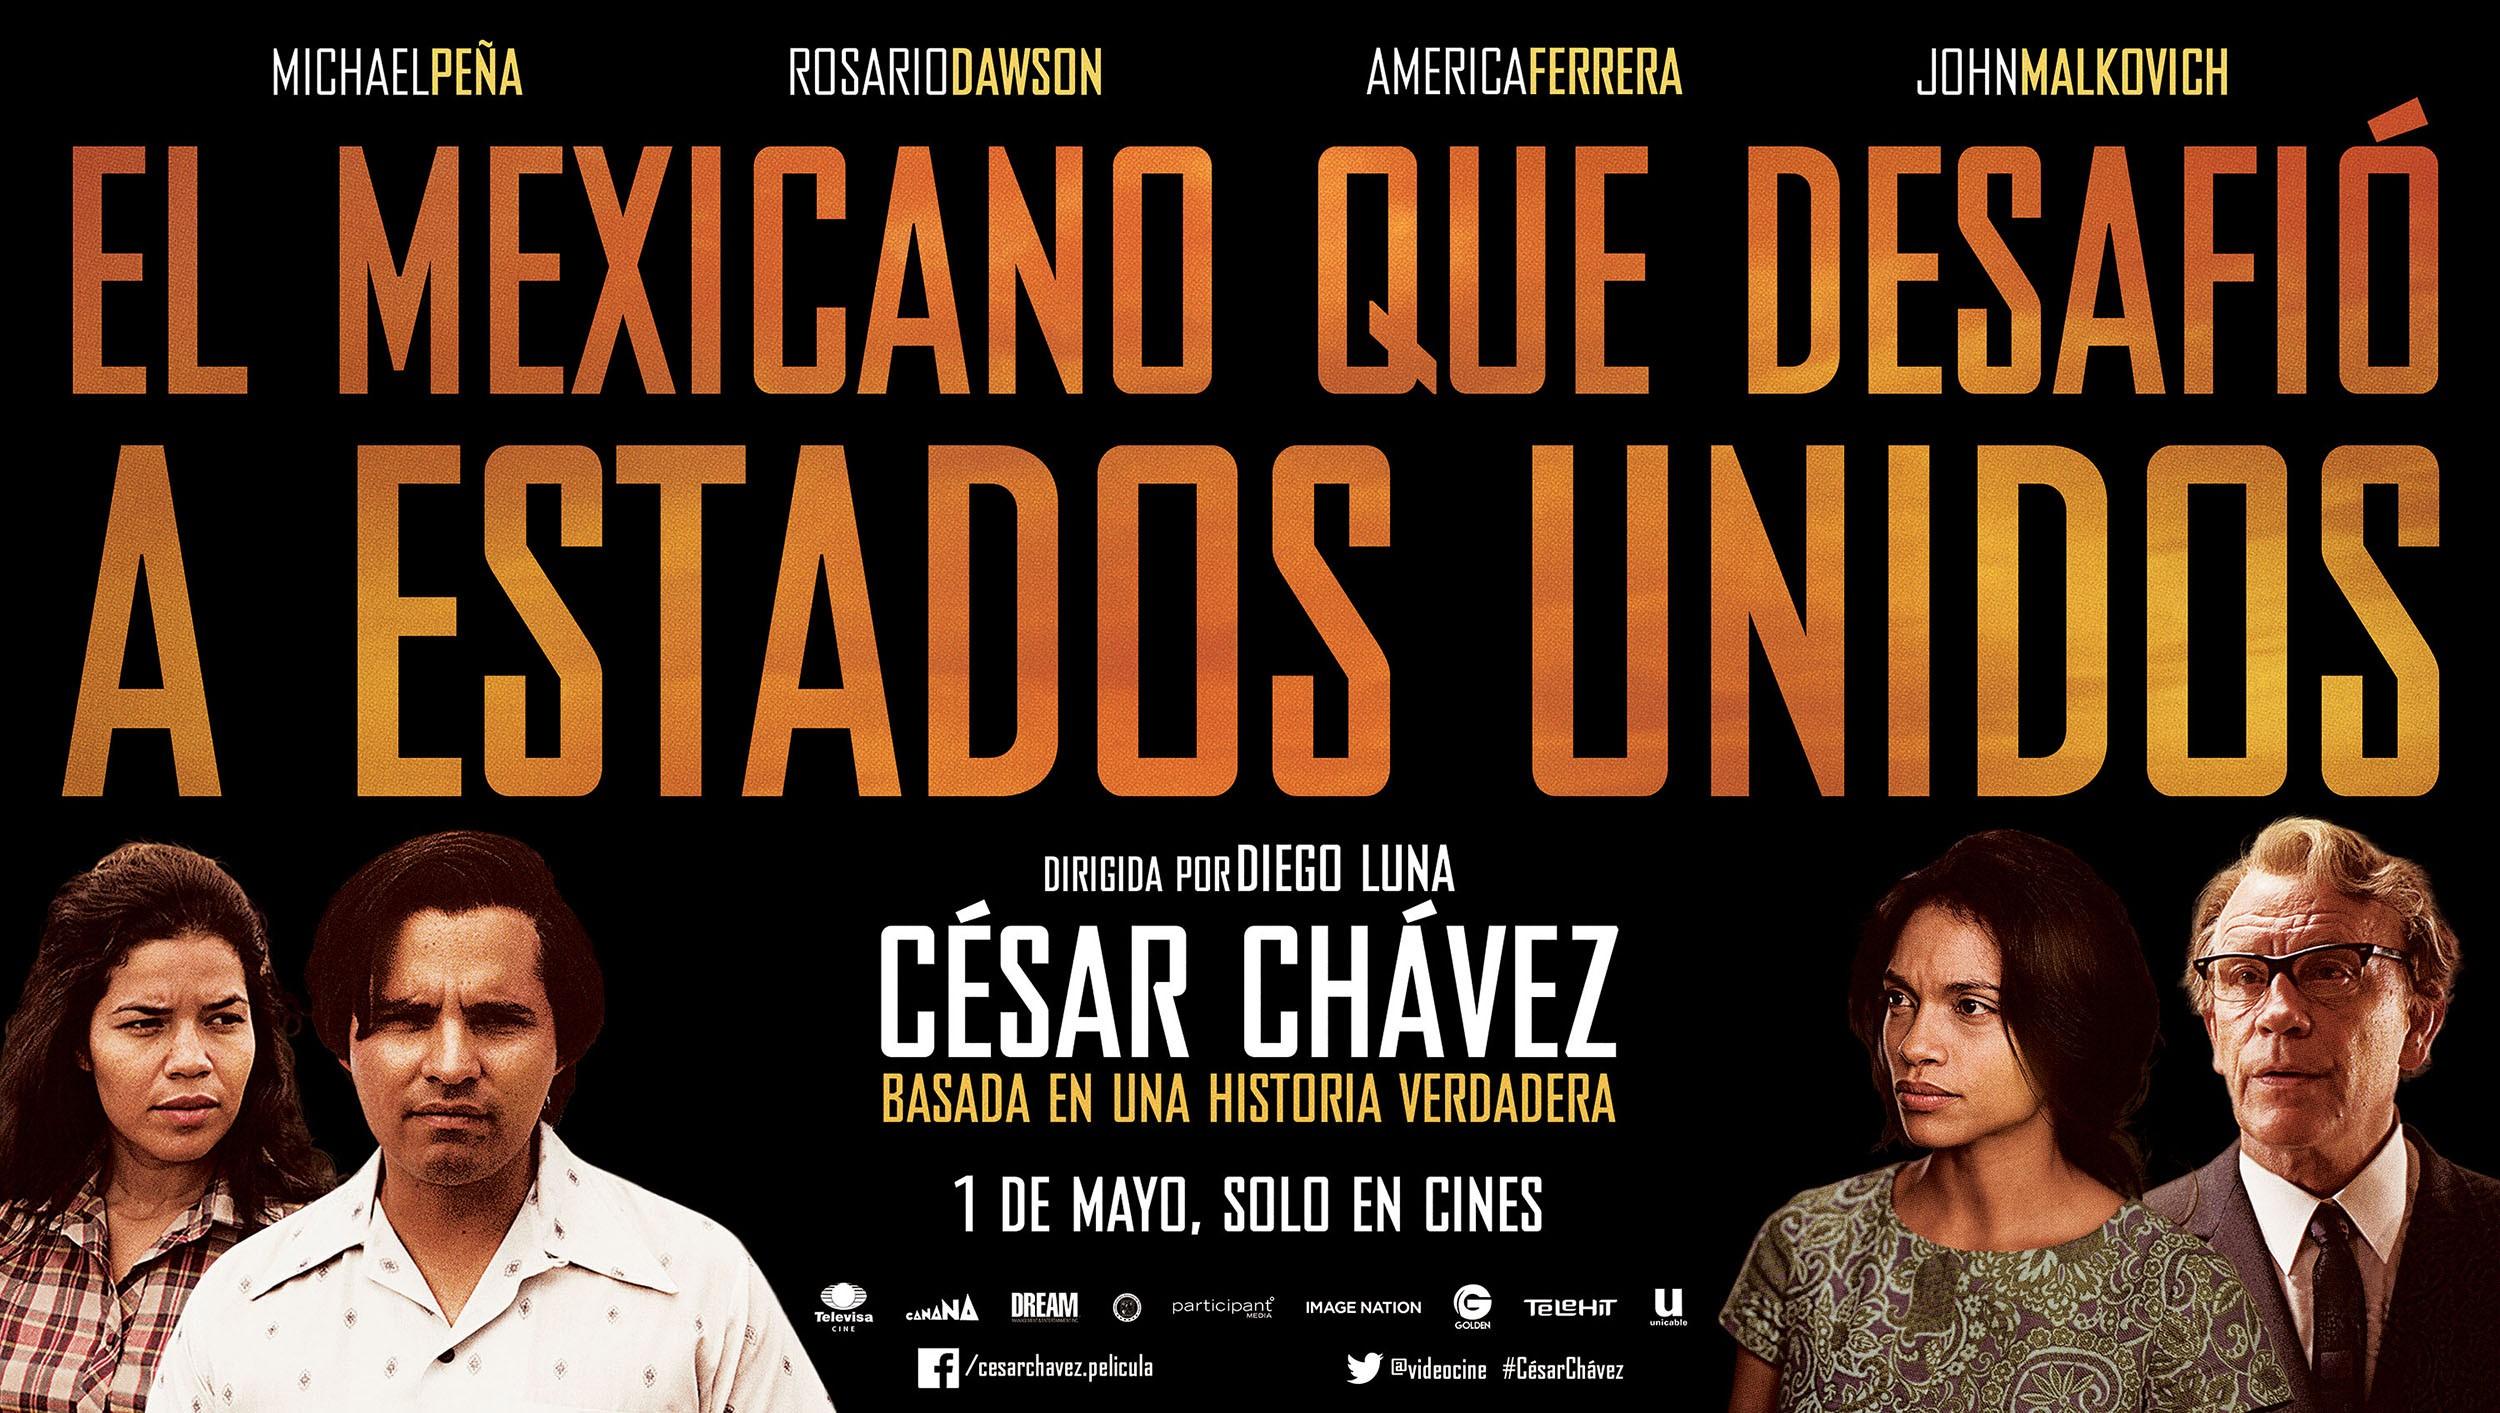 Постер фильма Сесар Чавес: Американский герой | Cesar Chavez: An American Hero